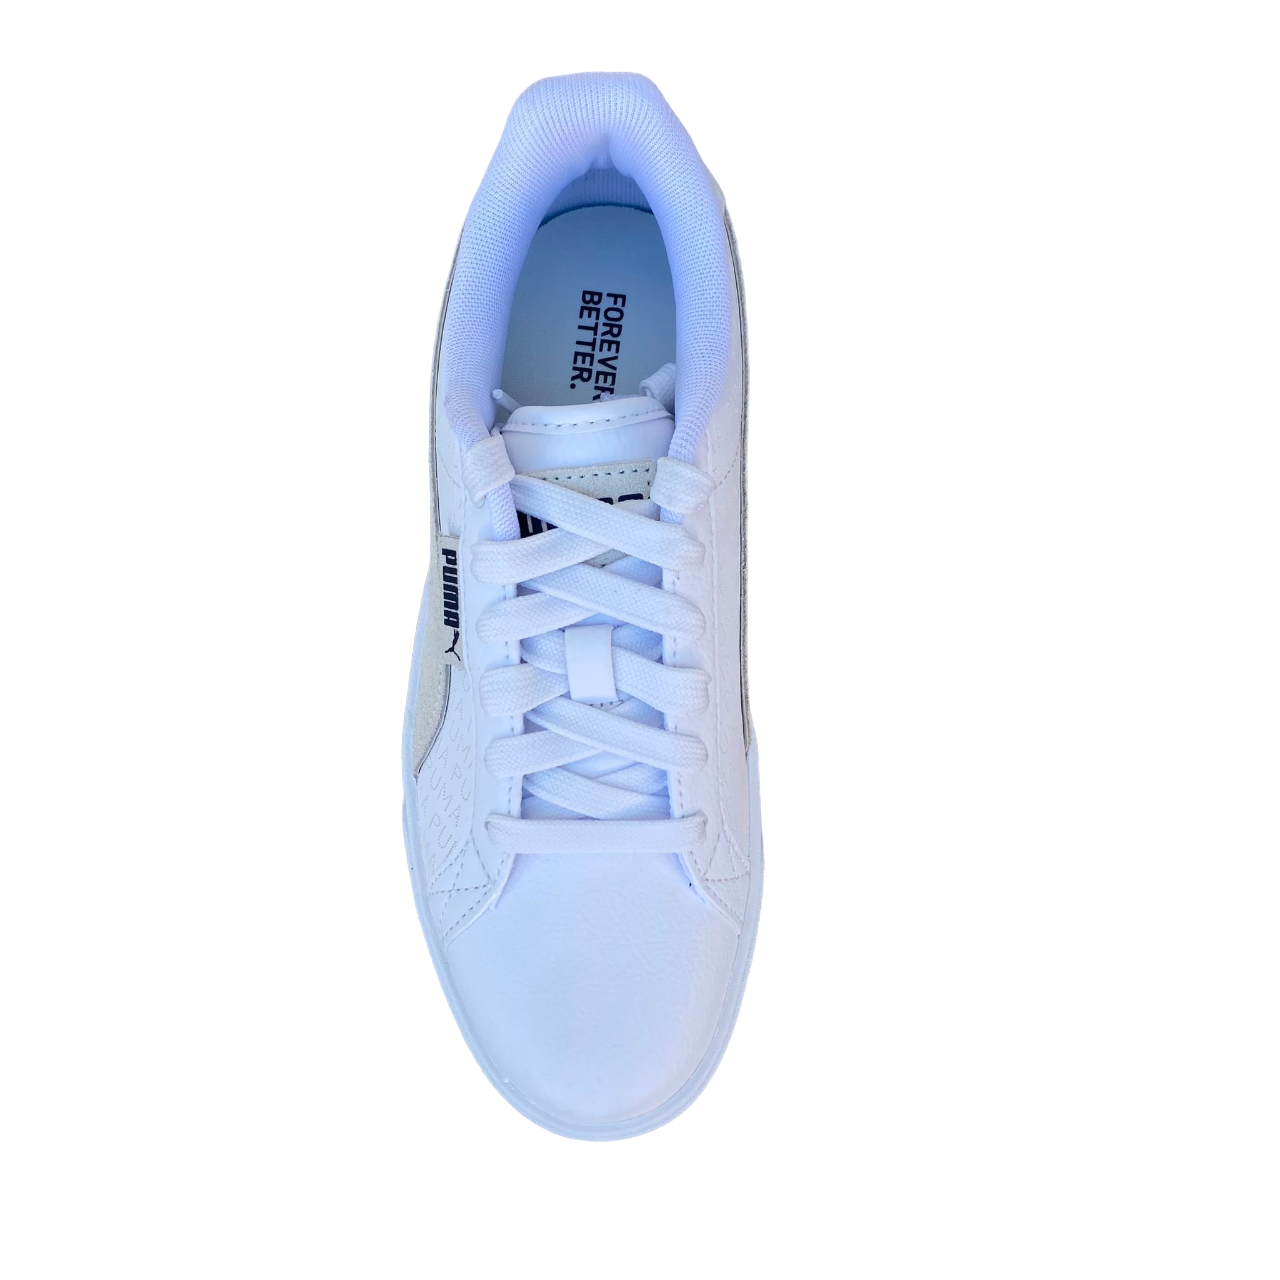 Puma scarpa sneakers da donna Karmen con Logo stampato 393194 01 bianco